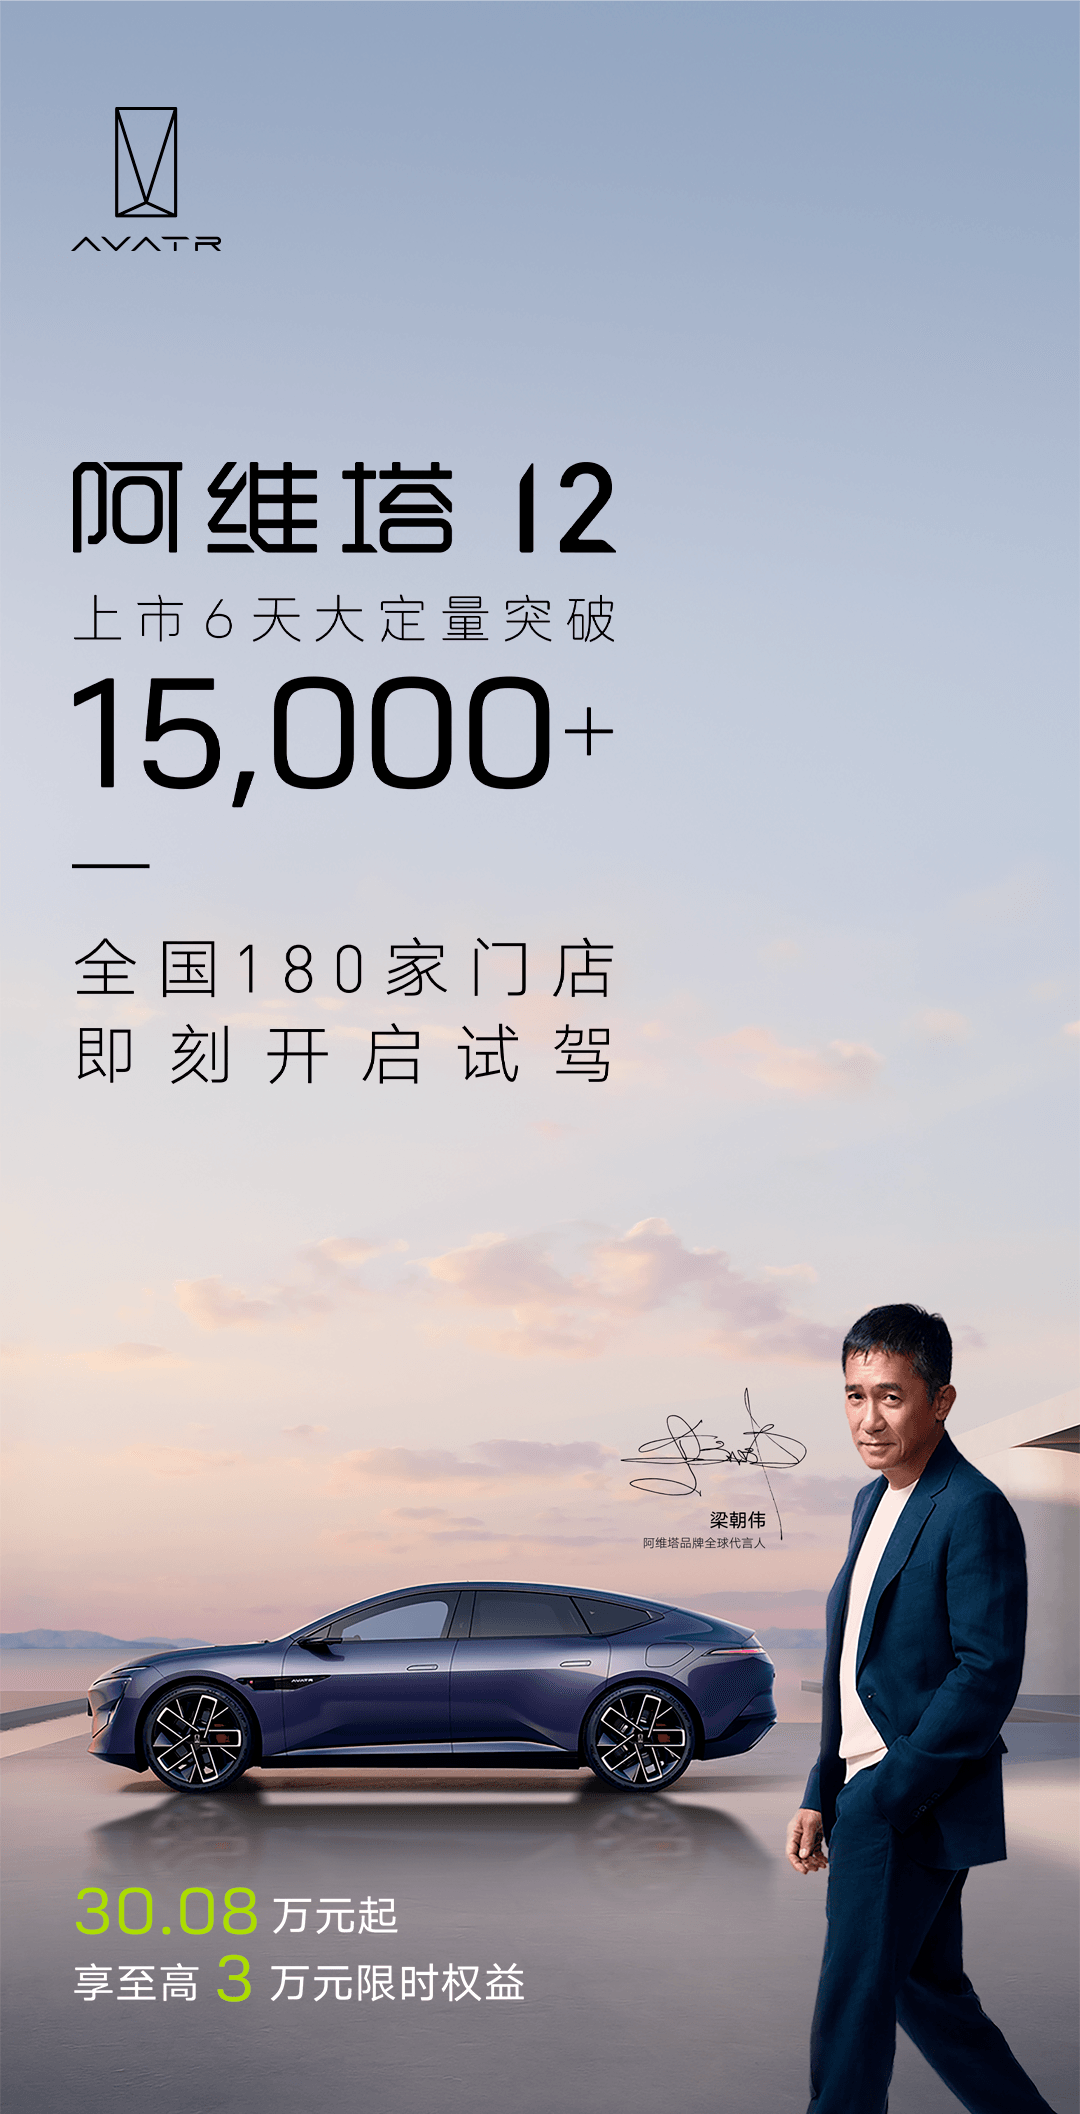 阿维塔12车型上市6天大订量突破1.5万，再次刷新行业纪录